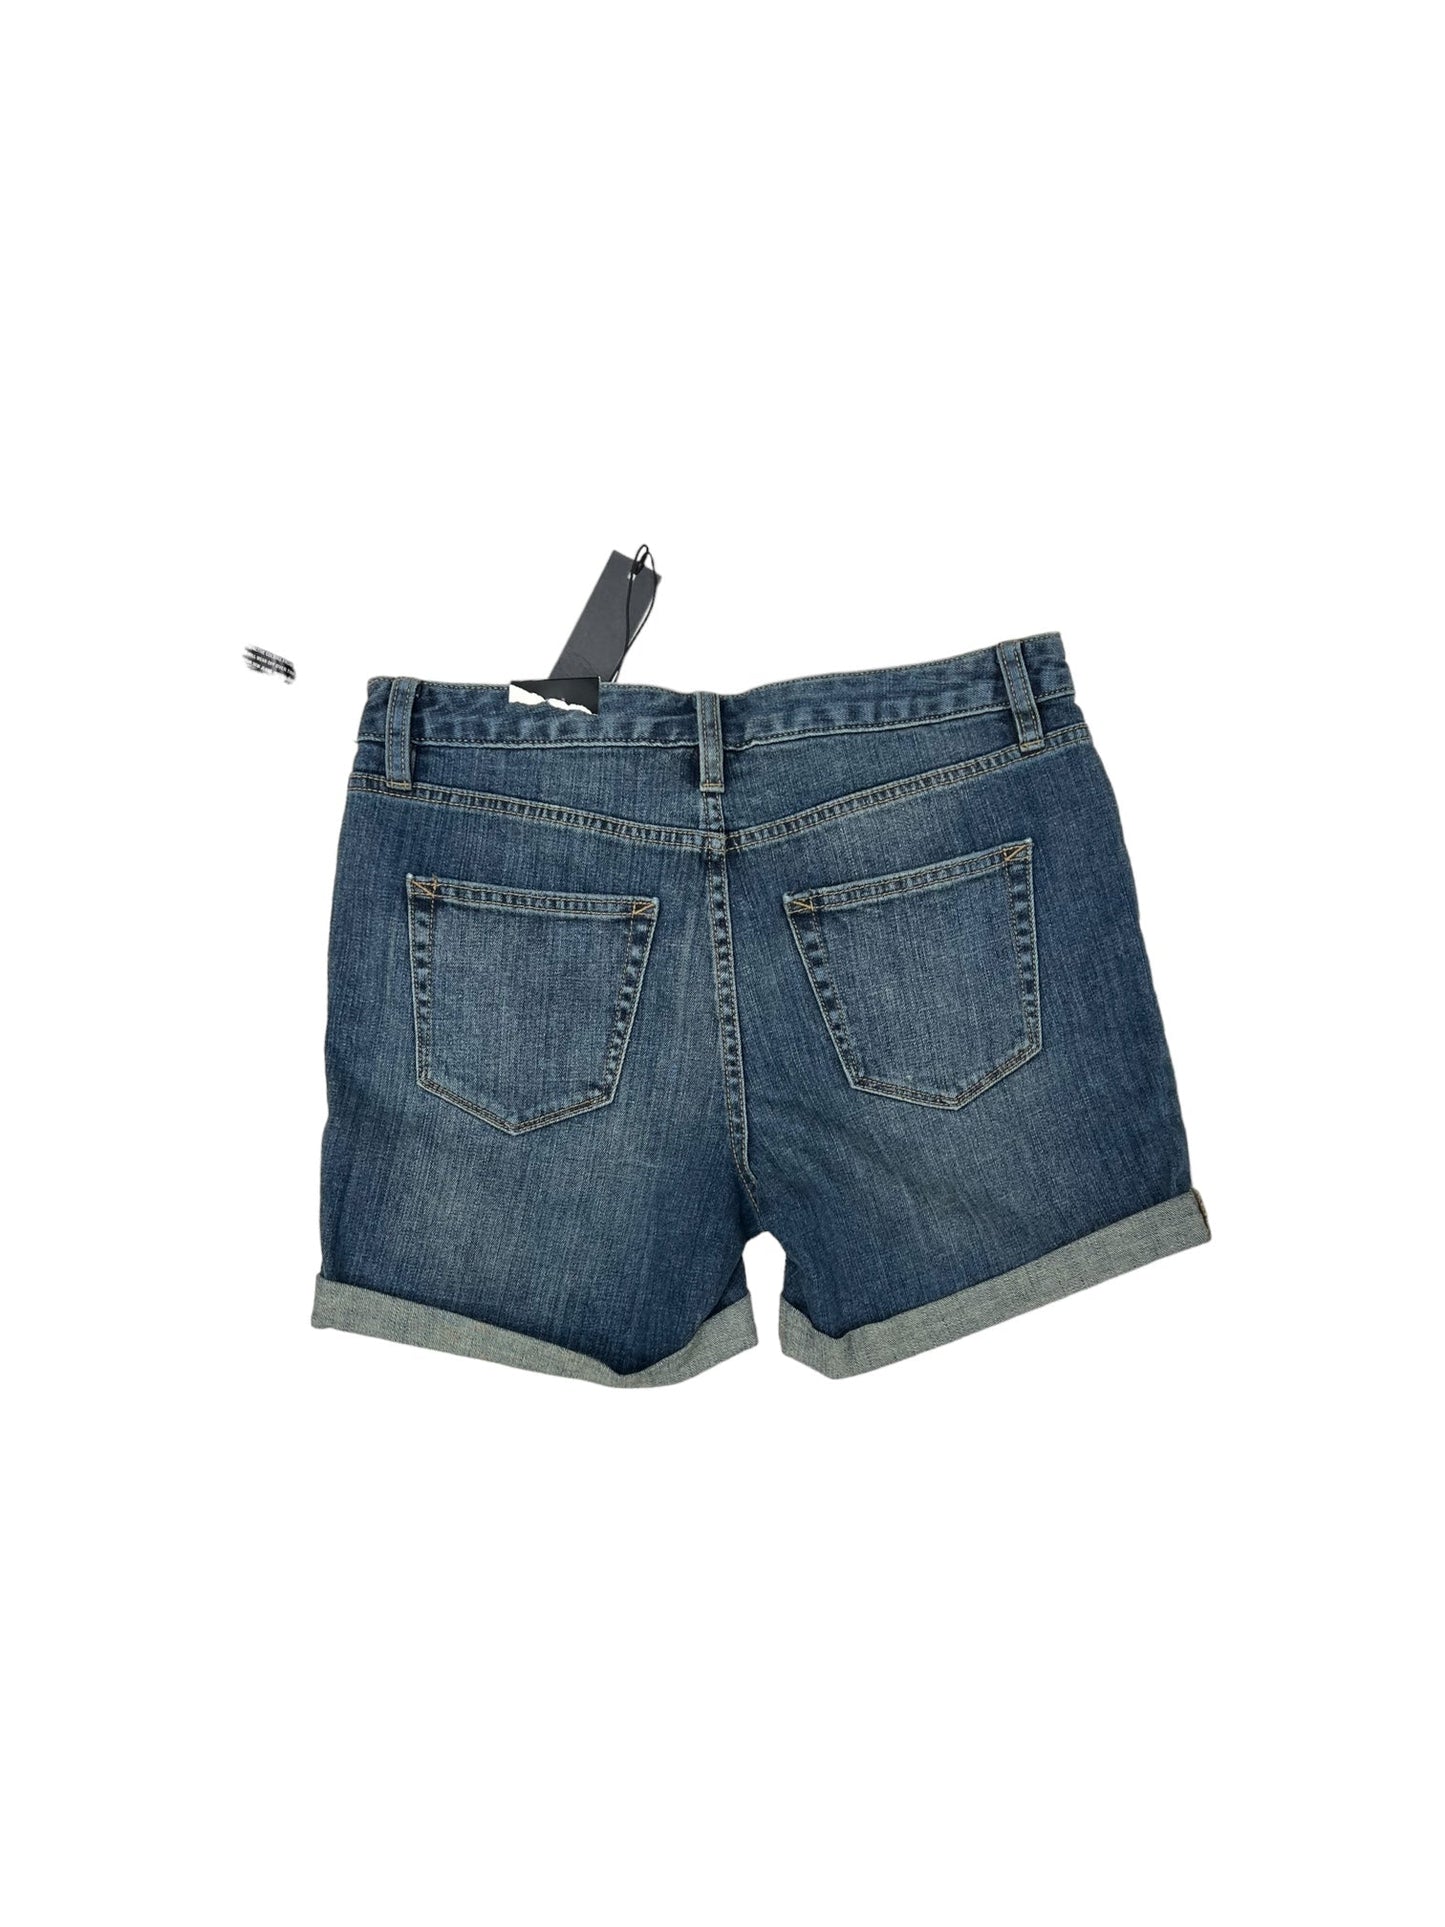 Blue Denim Shorts Ana, Size 4